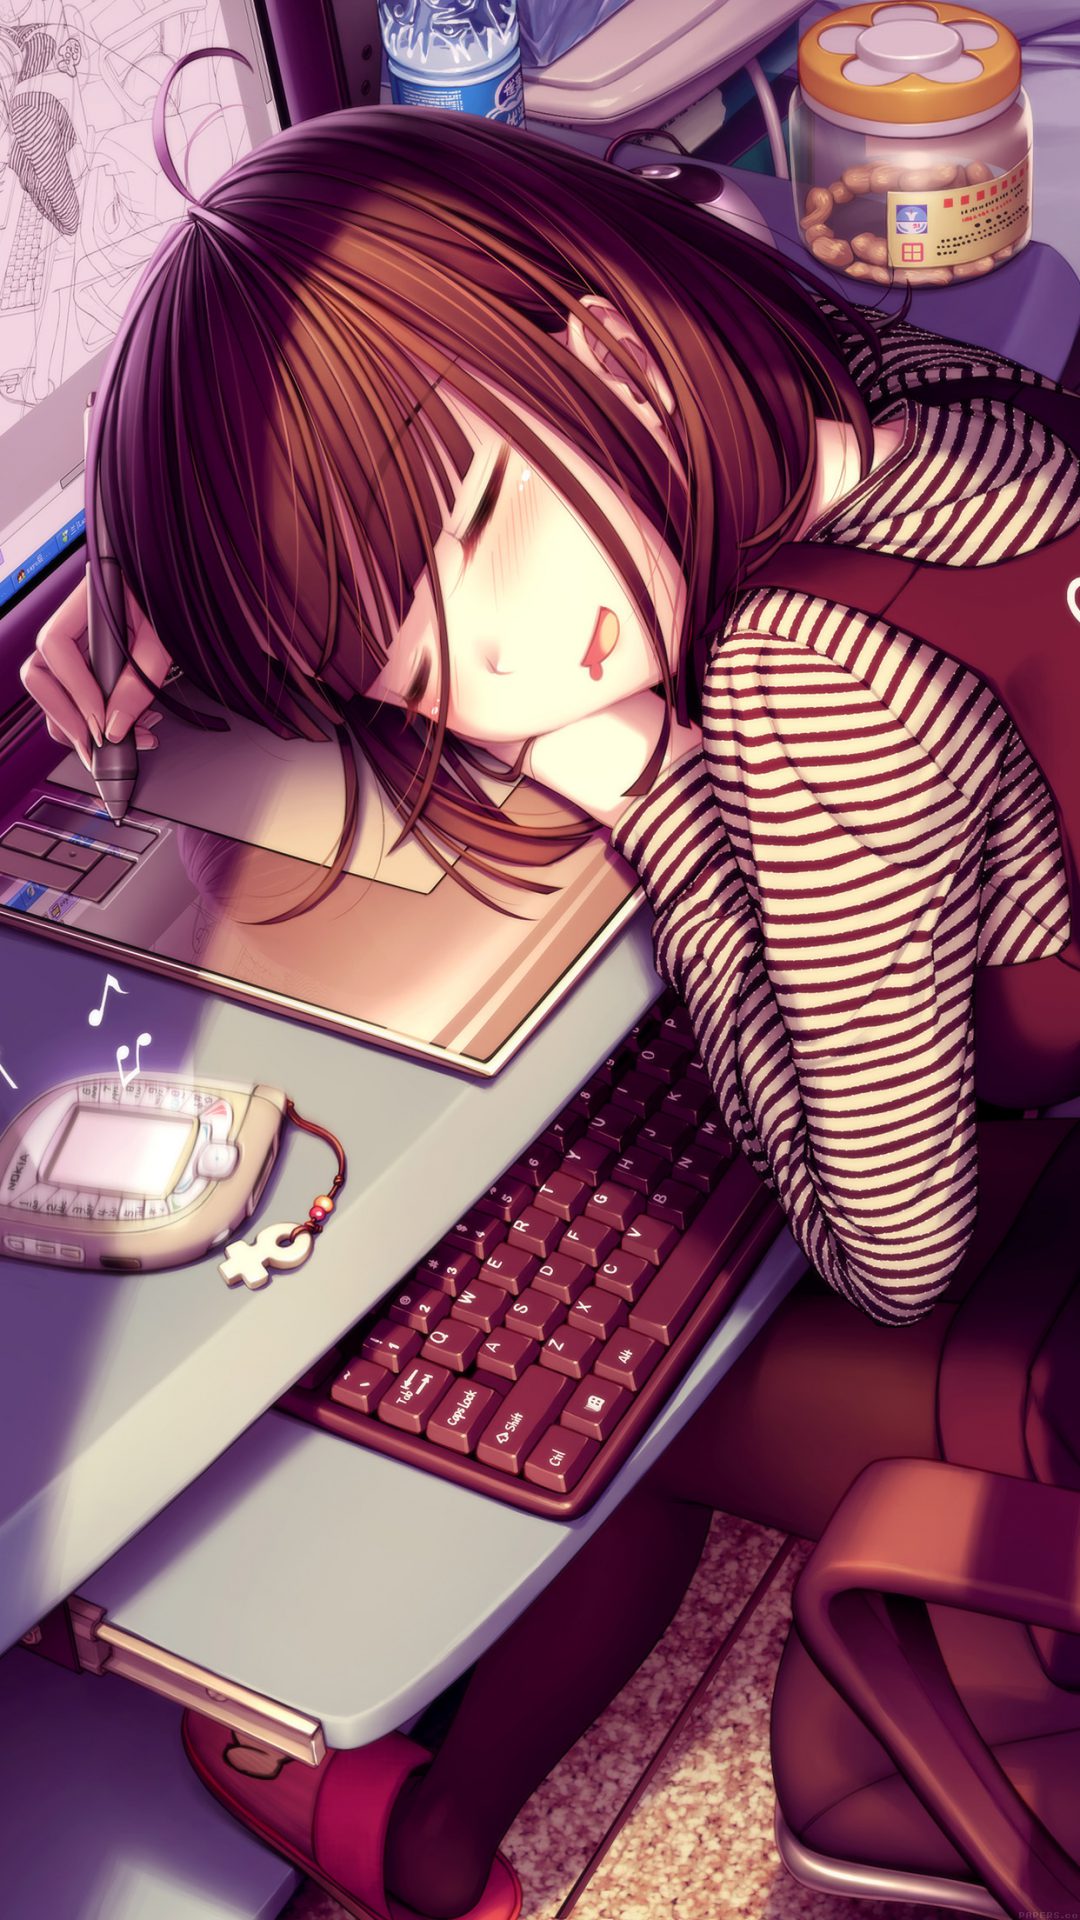 Illustor Anime Art Girl Sleepin